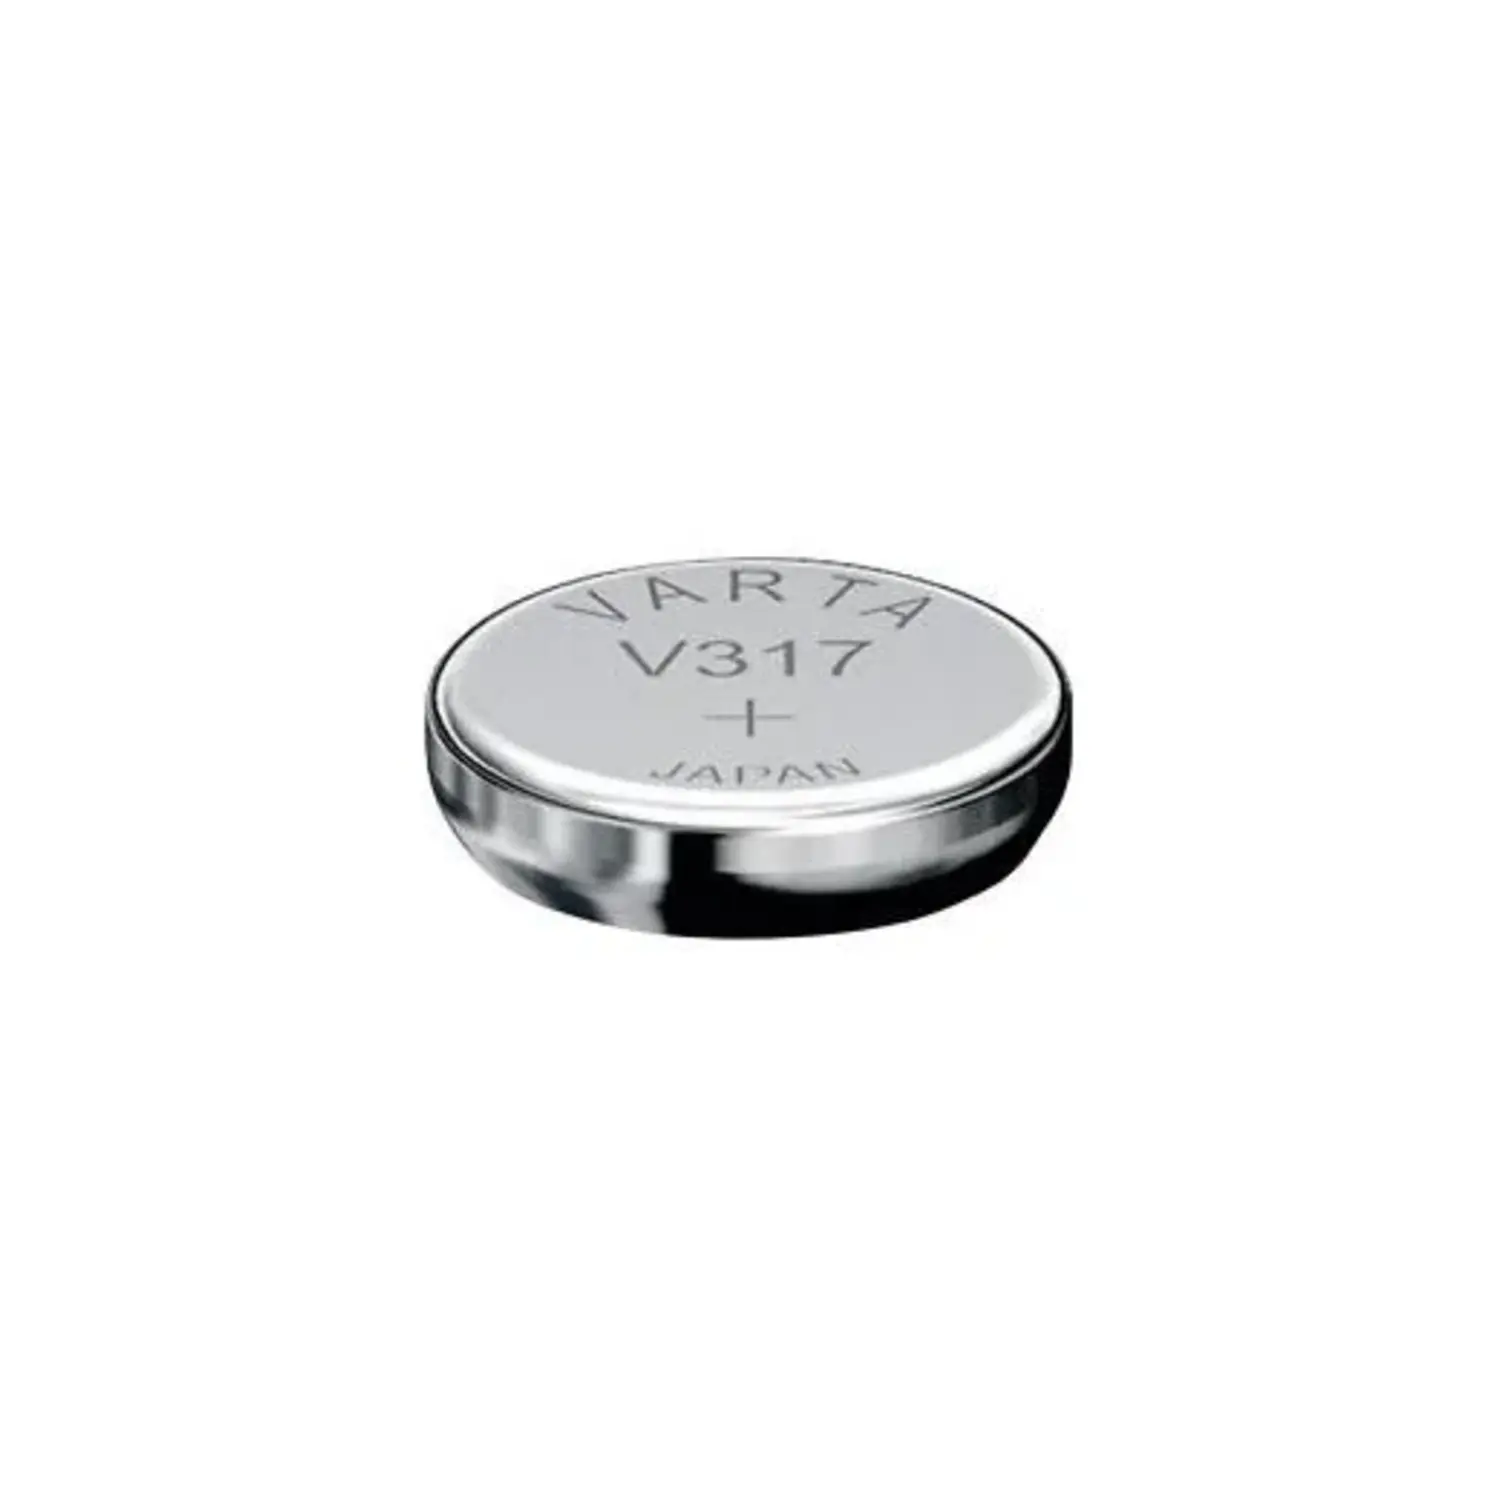 immagine del prodotto pila a bottone orologio v317 1,55v vrt v317